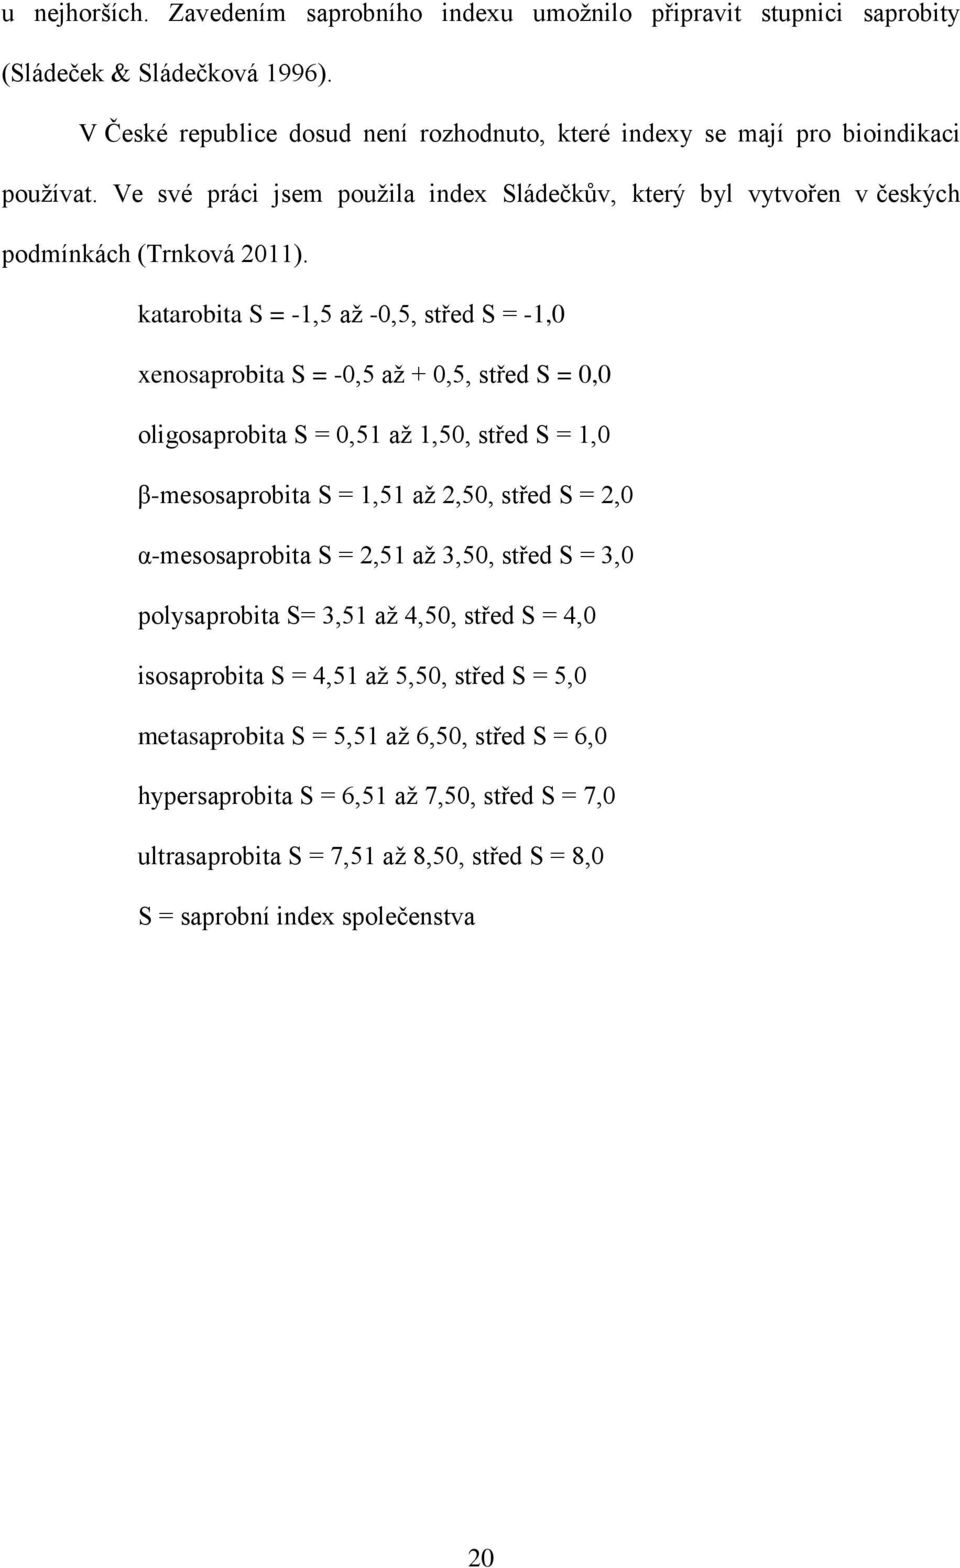 katarobita S = -1,5 až -0,5, střed S = -1,0 enosaprobita S = -0,5 až + 0,5, střed S = 0,0 oligosaprobita S = 0,51 až 1,50, střed S = 1,0 β-mesosaprobita S = 1,51 až 2,50, střed S = 2,0